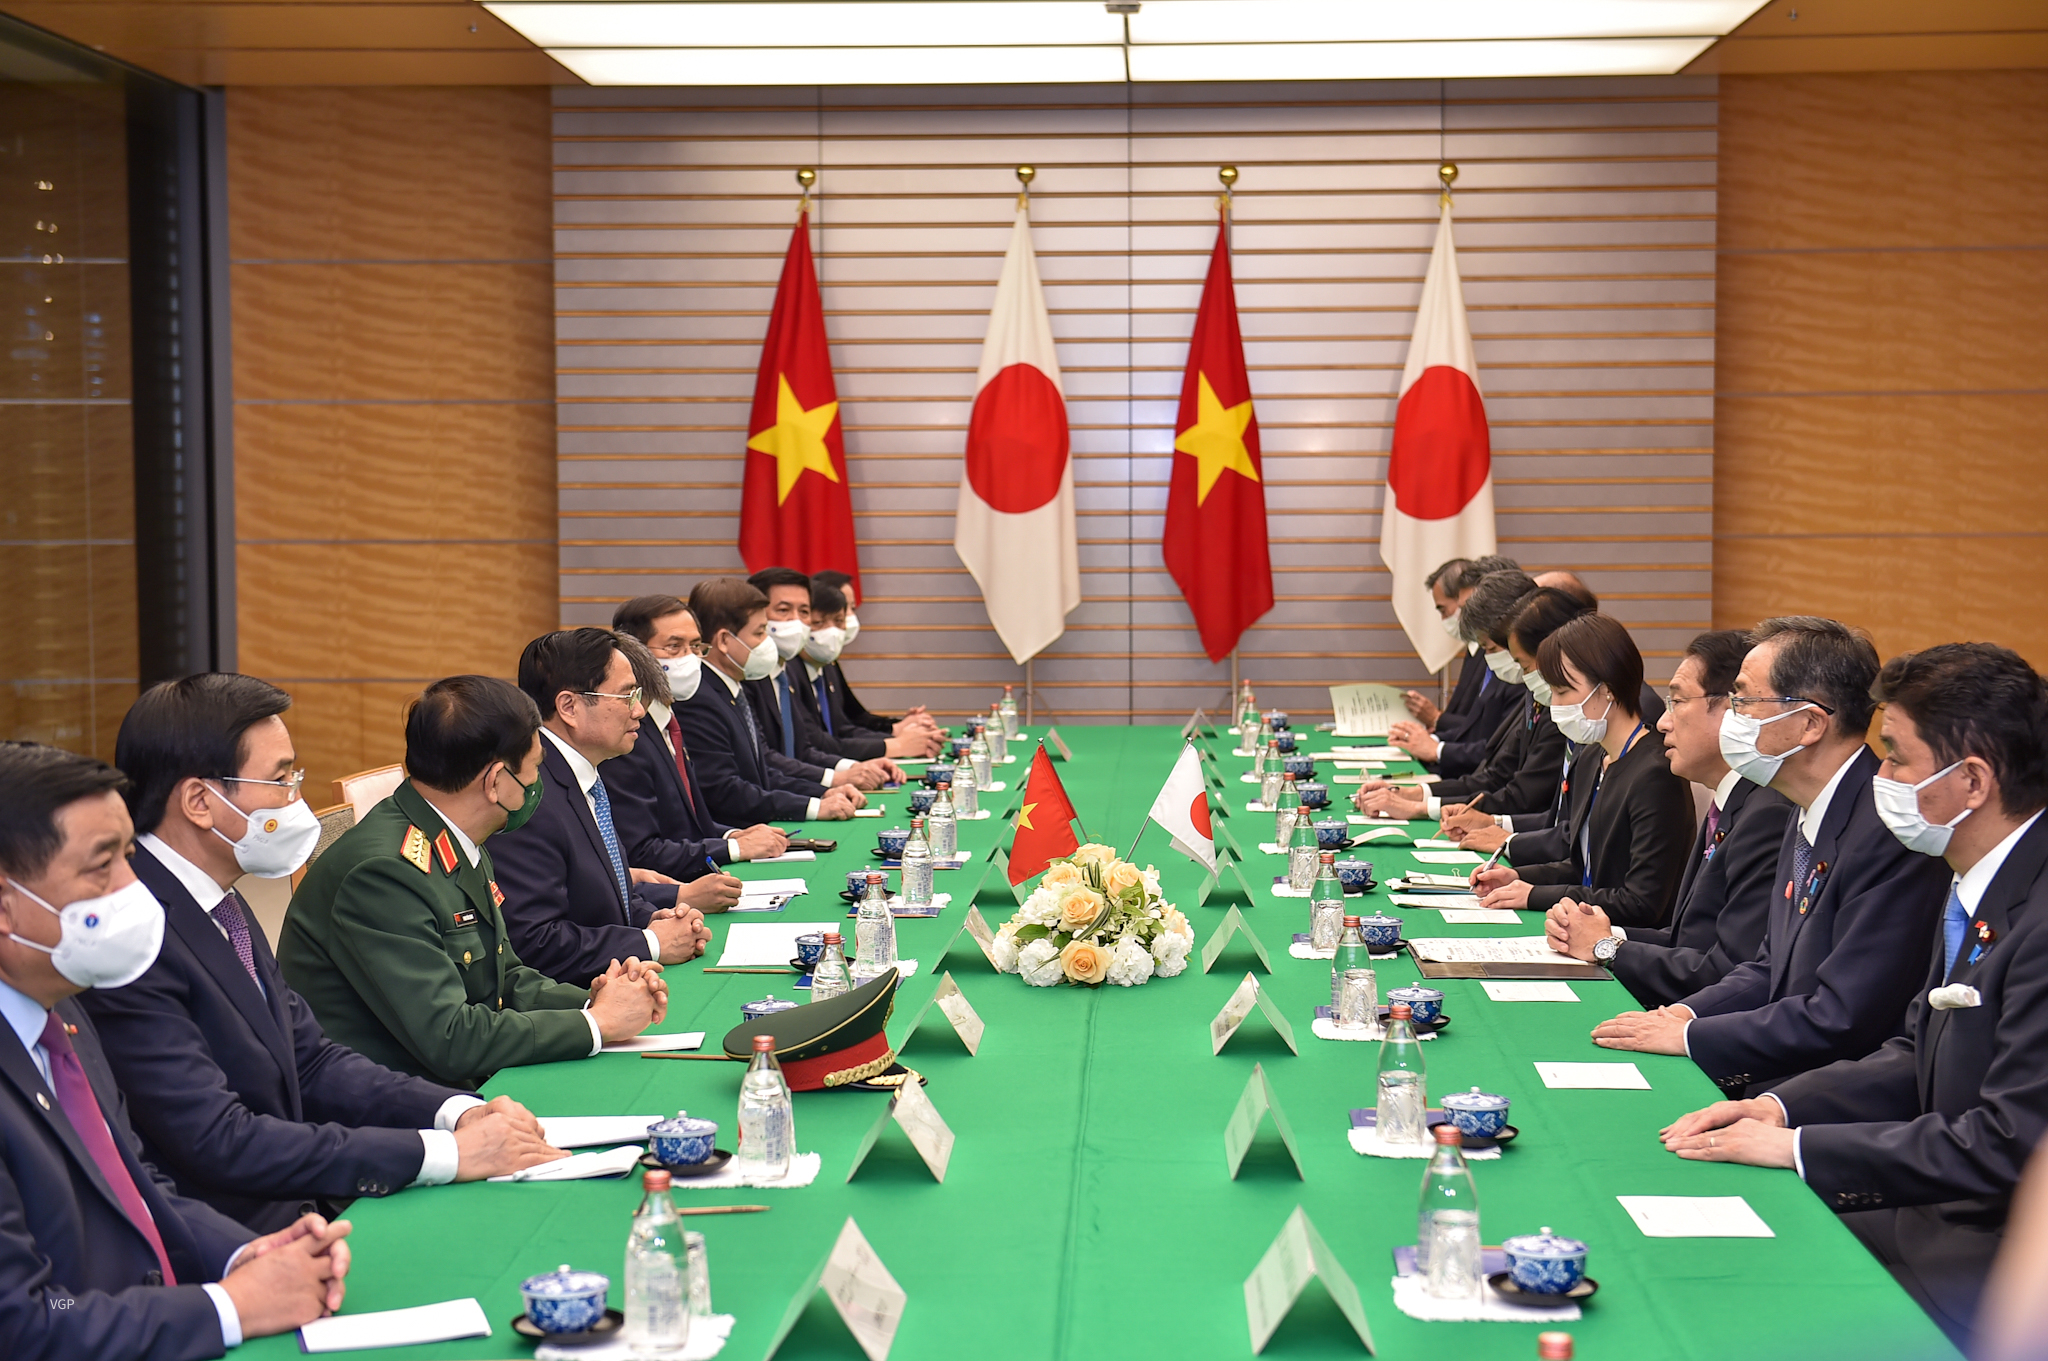 Chùm ảnh: Lễ đón trọng thể Thủ tướng Phạm Minh Chính thăm chính thức Nhật Bản